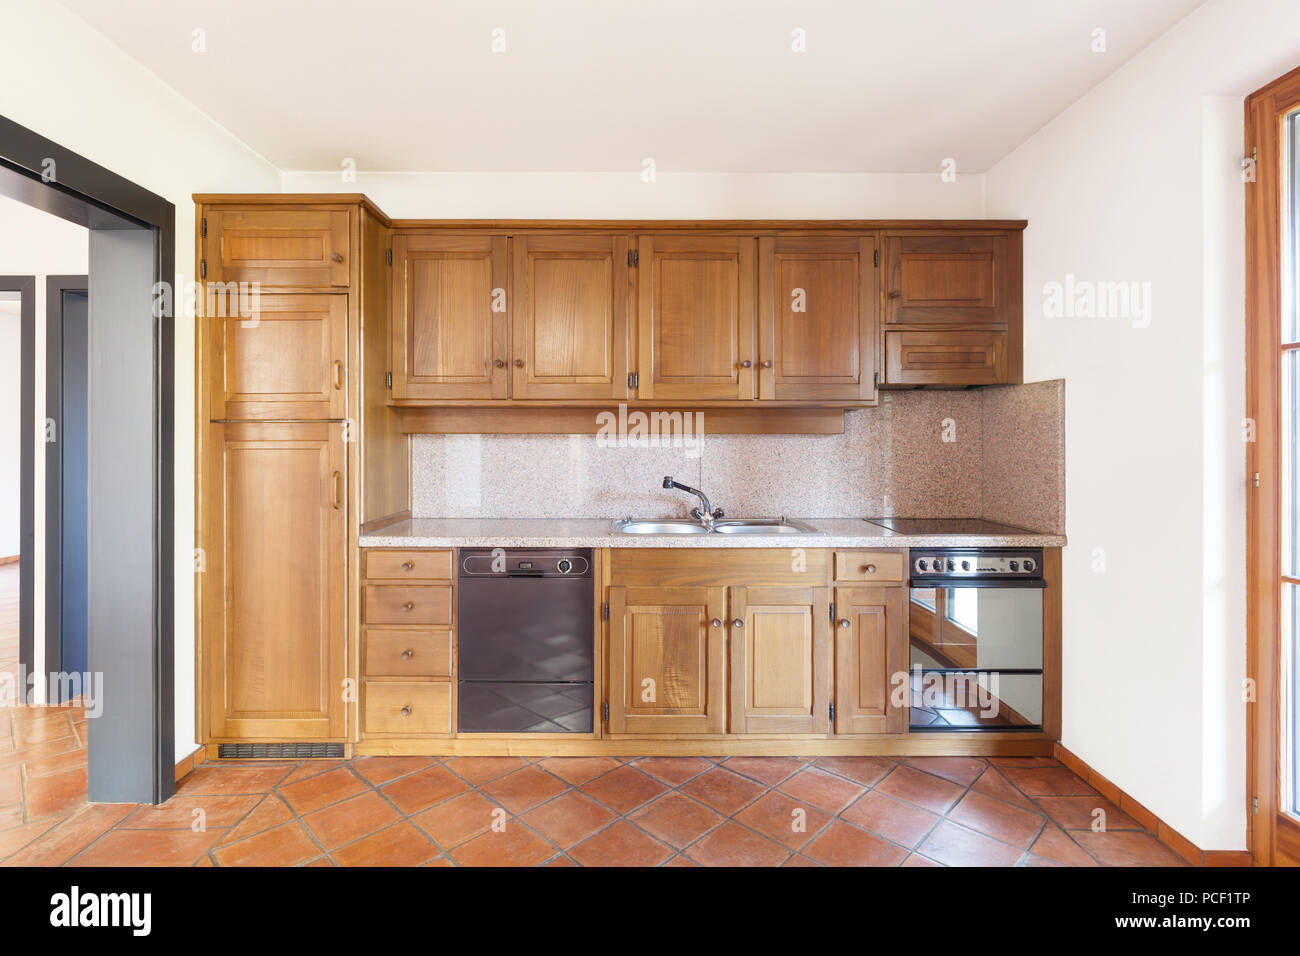 Architektur, Interieur Haus, schöne Küche aus Holz Stockfoto